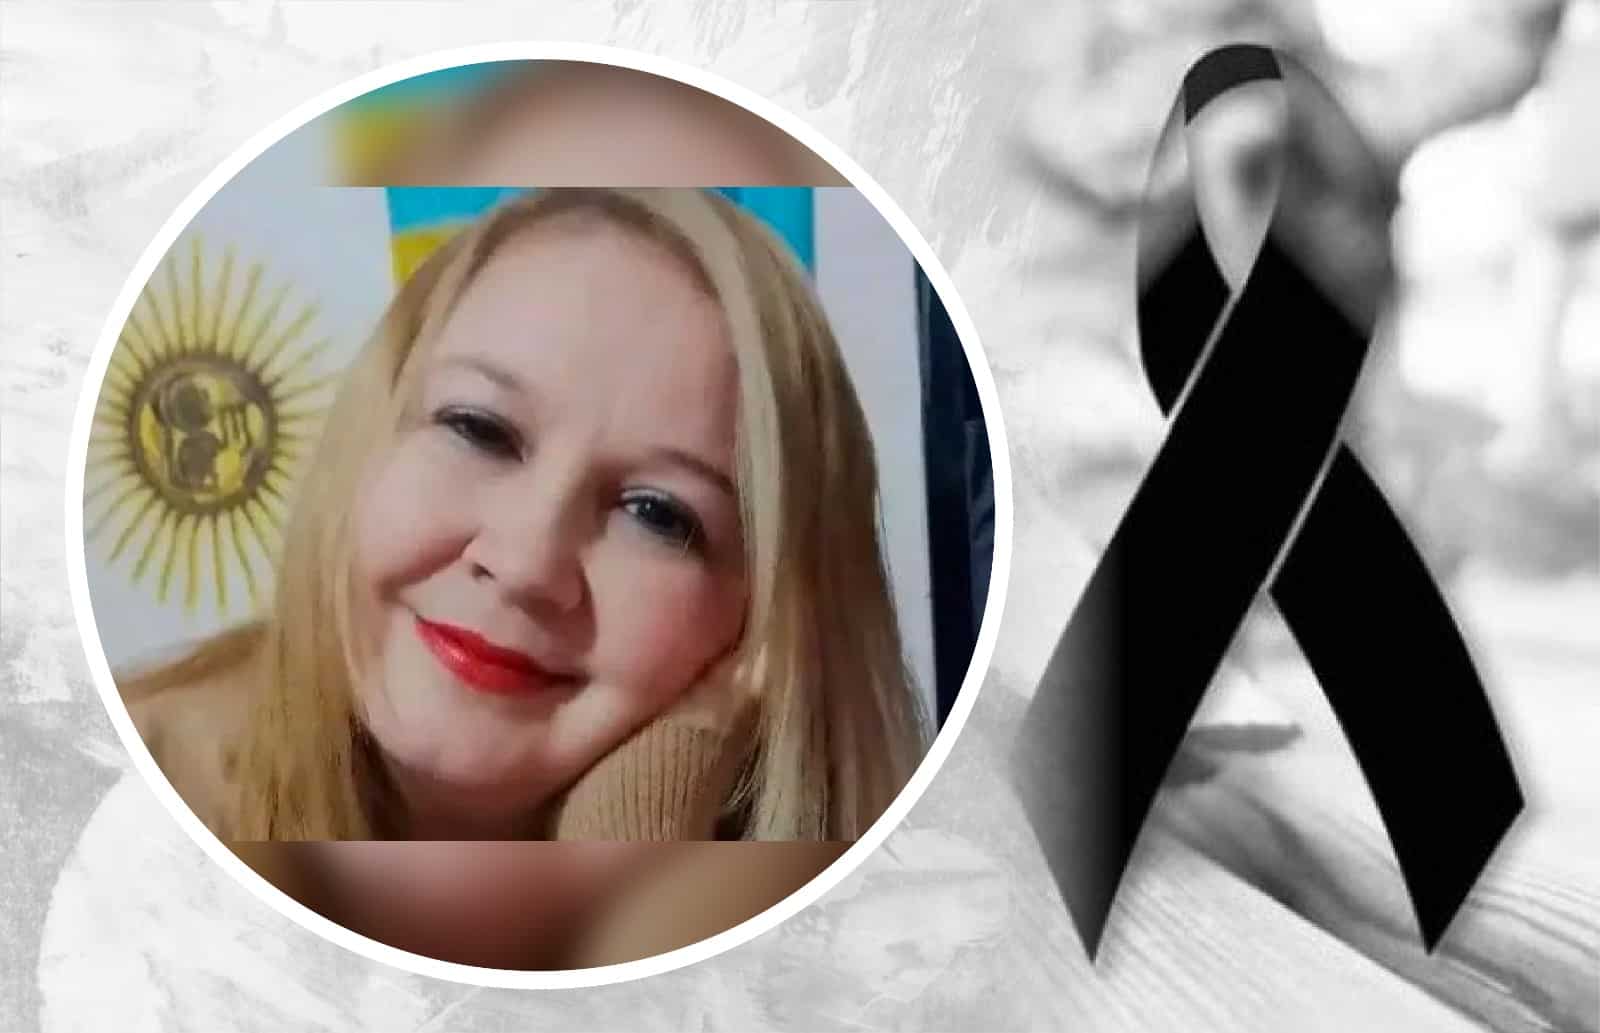 Periodista argentina es asesinada, su cuerpo tiene signos de estrangulamiento